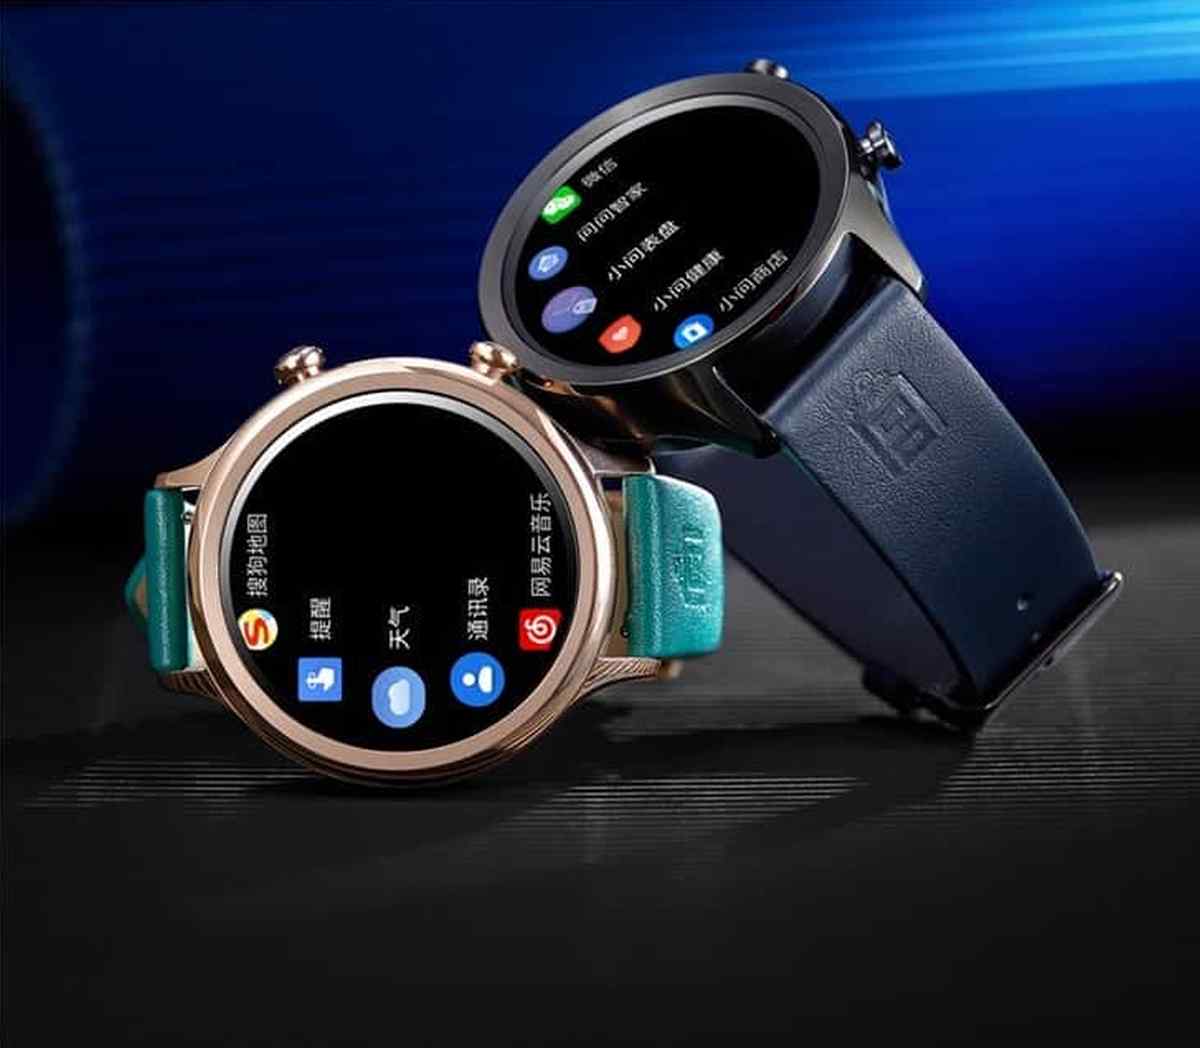 Xiaomi ra mắt Mi
Watch phiên bản 'Tử Cấm Thành' sử dụng chip
Snapdragon Wear 2100, 512MB RAM, giá từ 4,3 triệu đồng